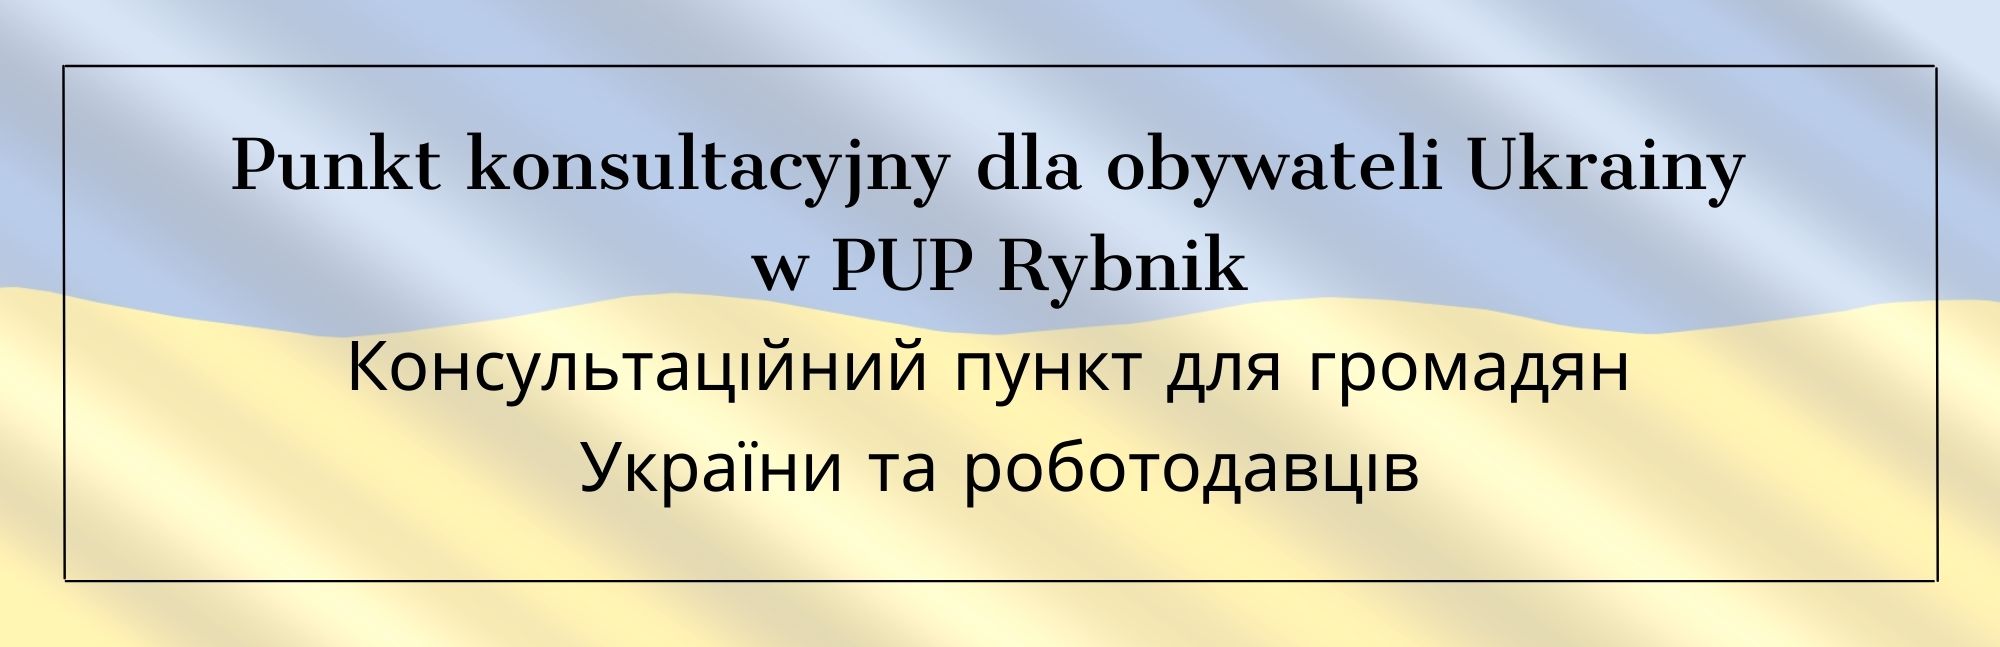 Punkt konsultacyjny dla obywateli Ukrainy w PUP Rybnik